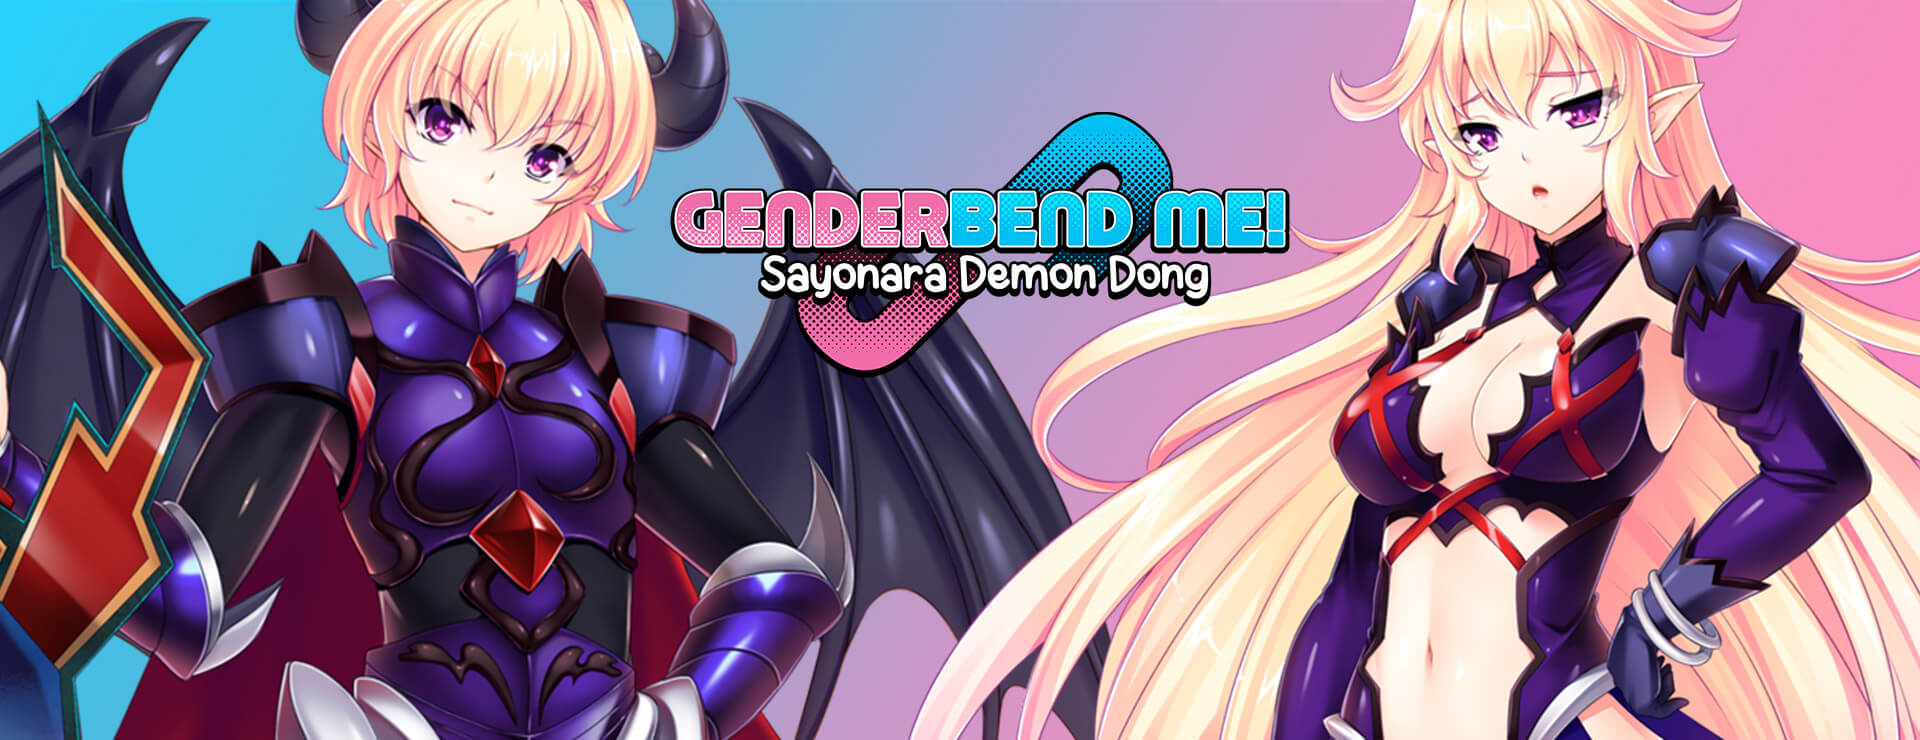 Genderbend Me! Sayonara Demon Dong - Novela Visual Juego